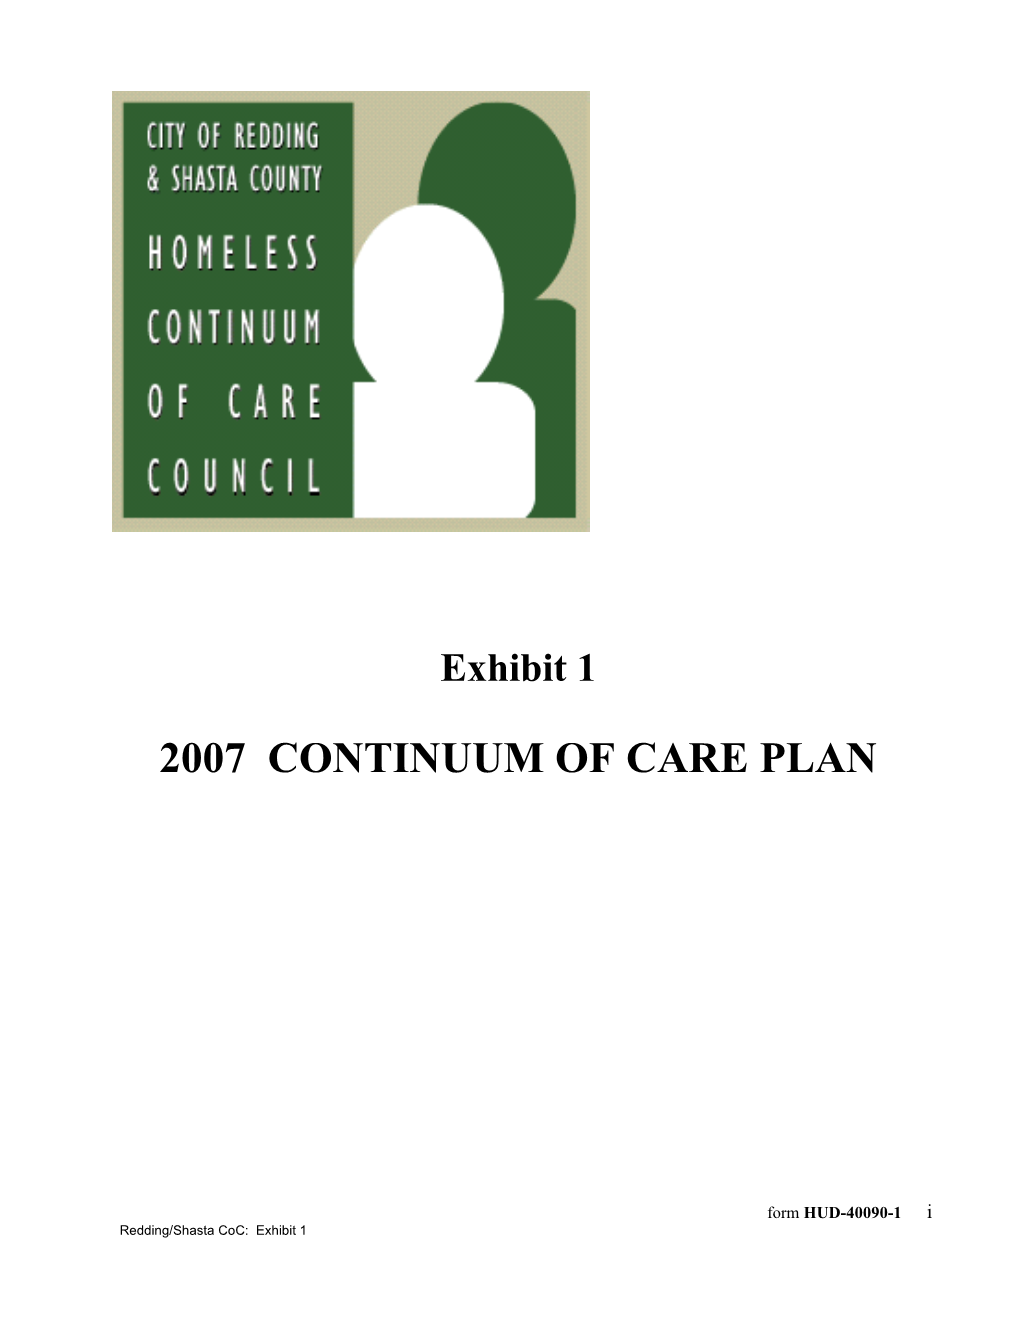 2007 Continuum of Care Plan